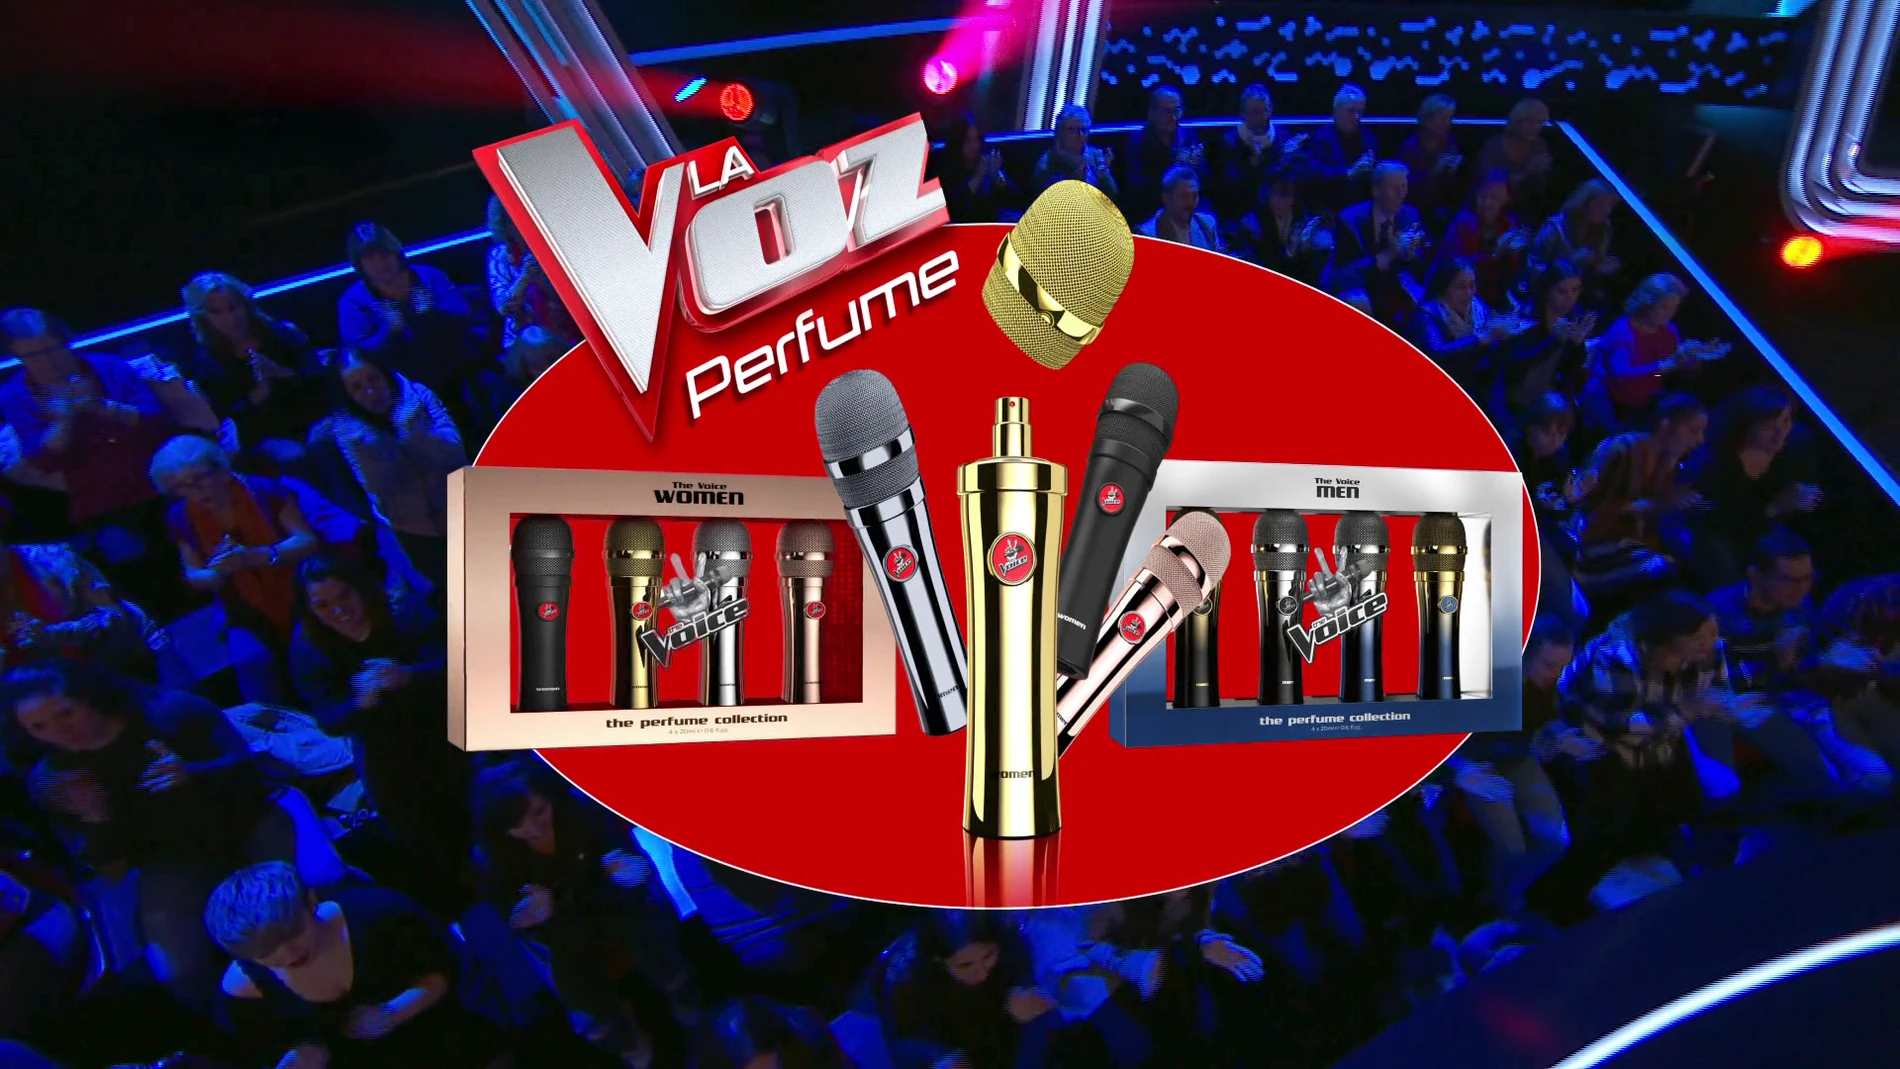 Hazte con el perfume de 'La Voz' y podrás ganar una entrada doble para vivir las galas en directo